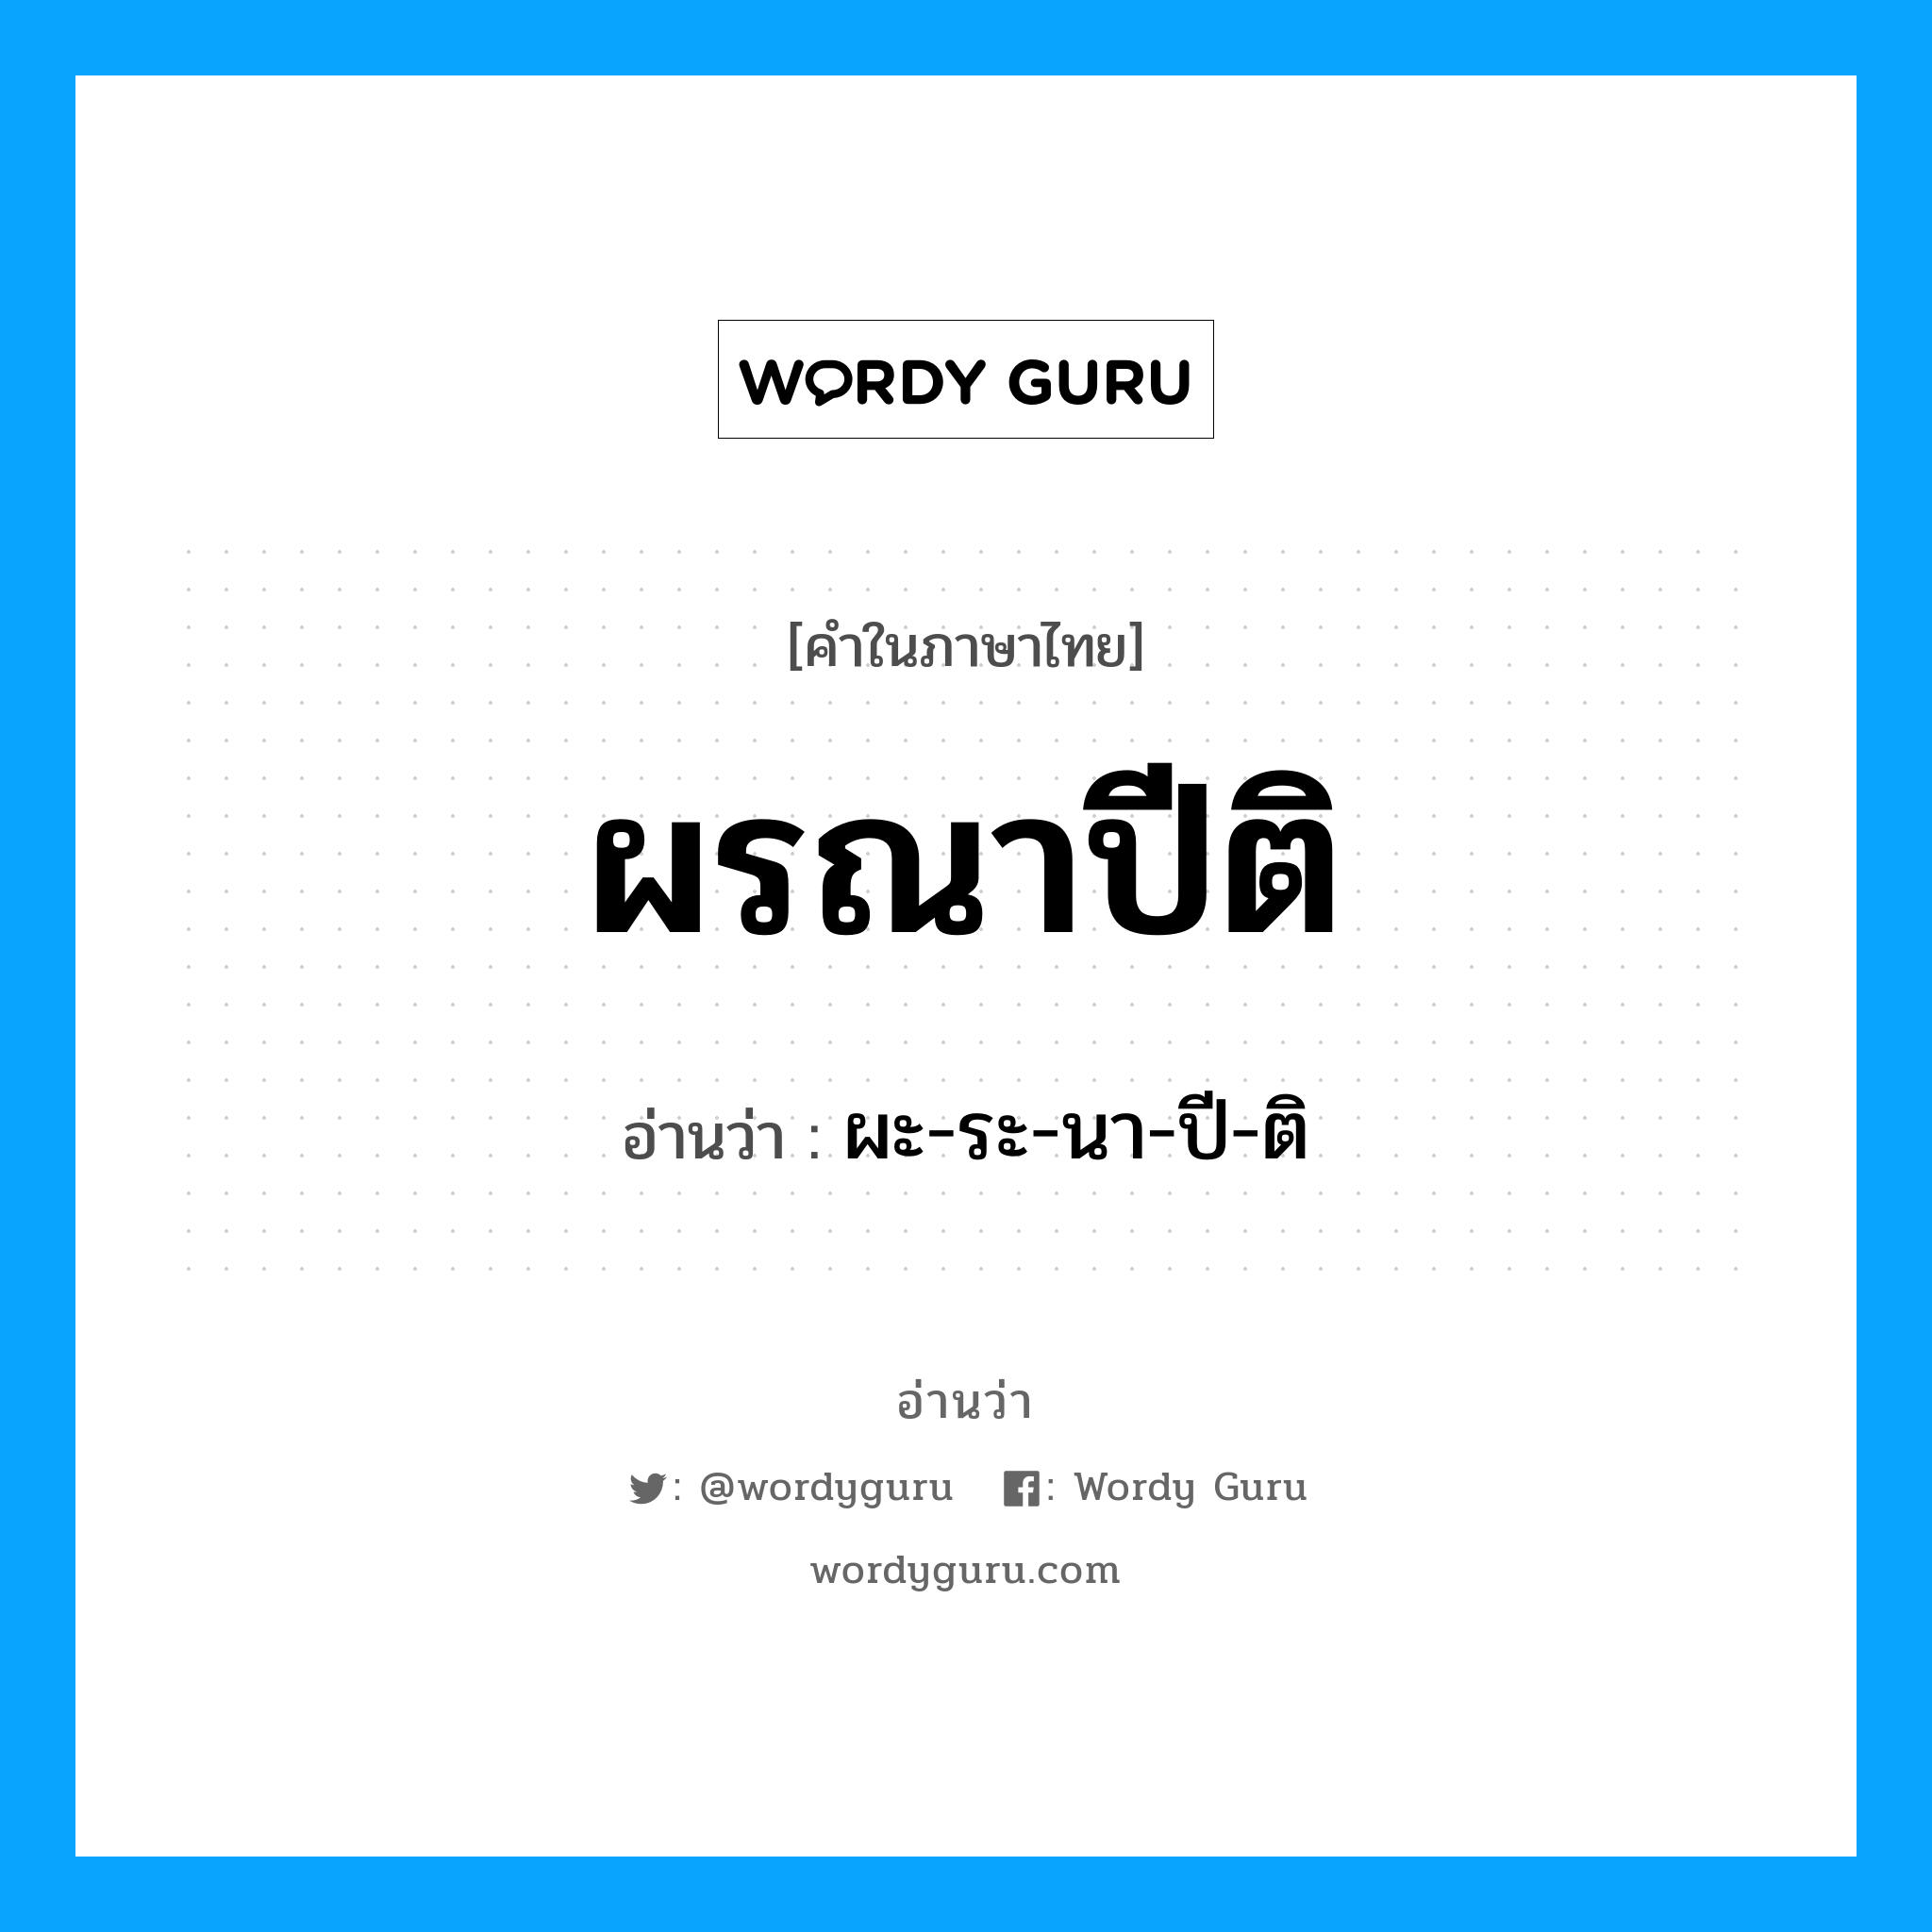 ผะ-ระ-นา-ปี-ติ เป็นคำอ่านของคำไหน?, คำในภาษาไทย ผะ-ระ-นา-ปี-ติ อ่านว่า ผรณาปีติ